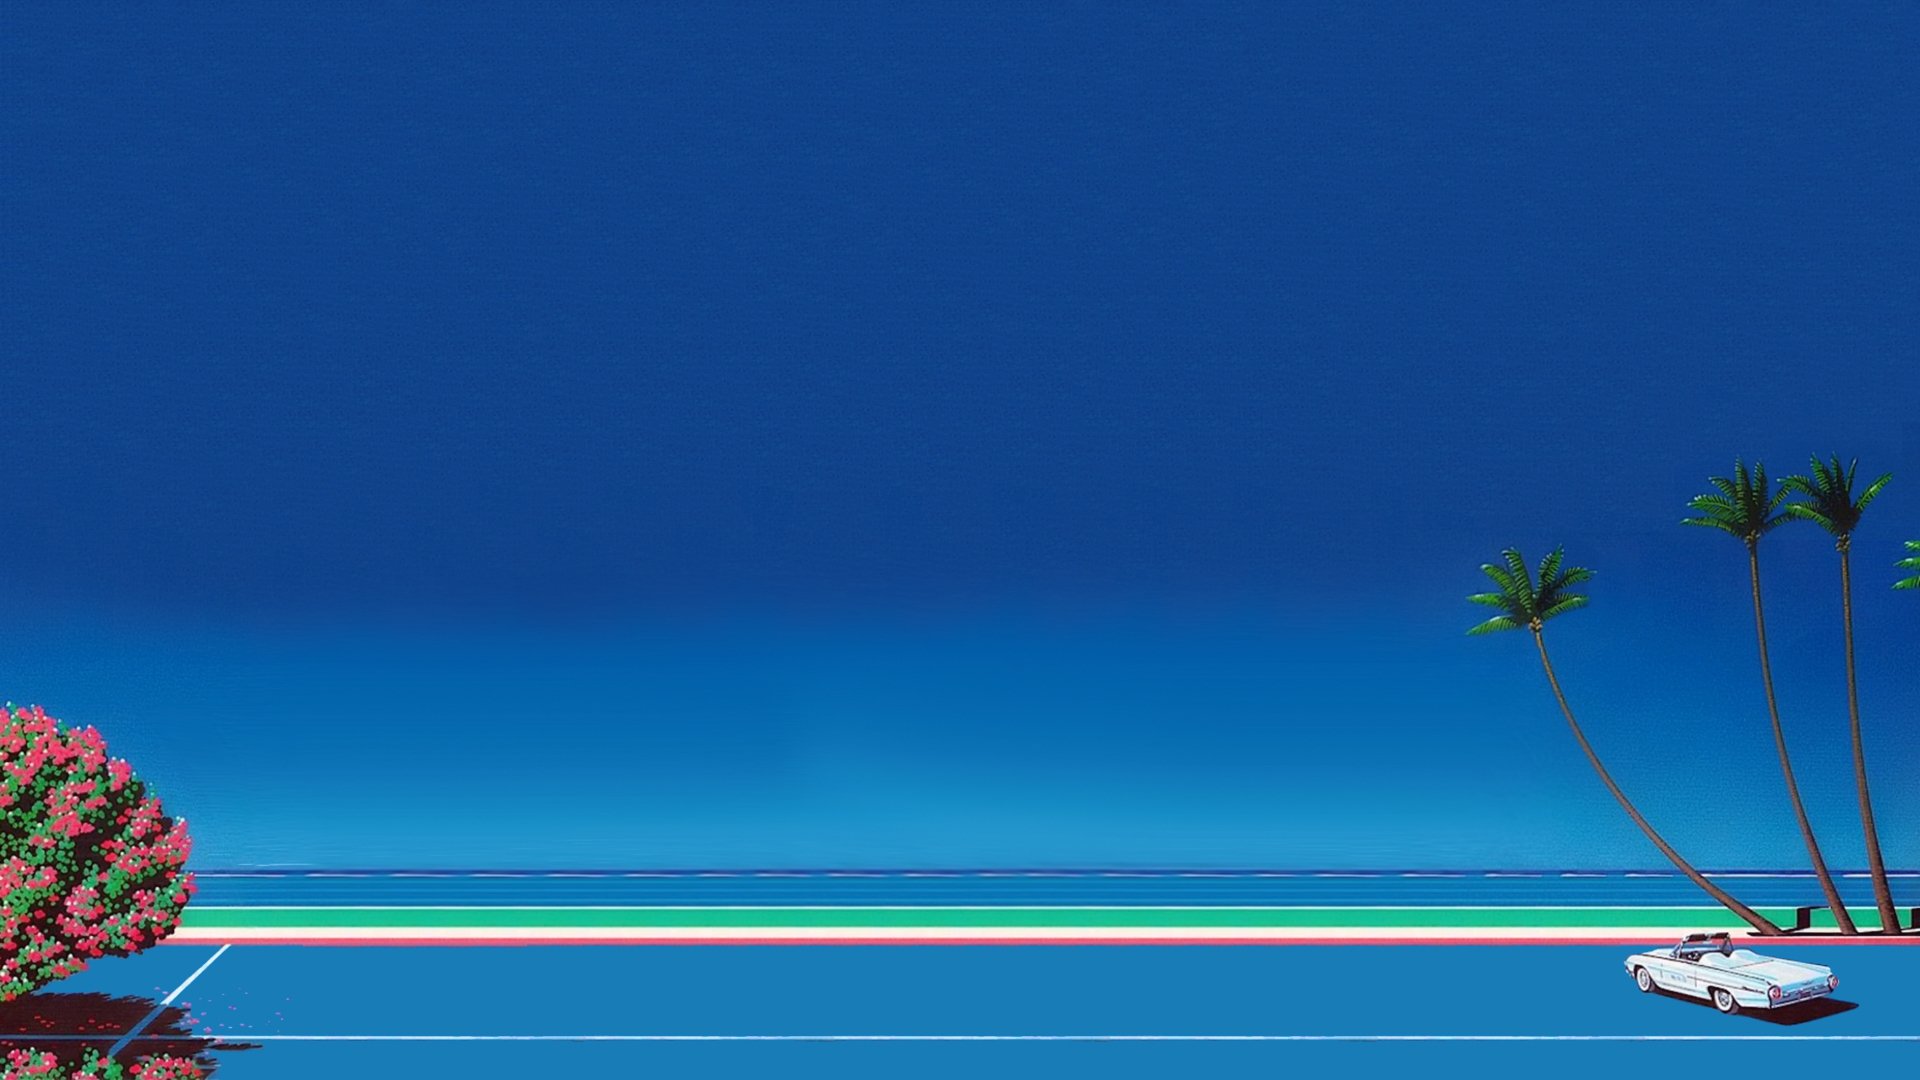 vaporwave wallpaper,blue,sky,azure,daytime,ocean